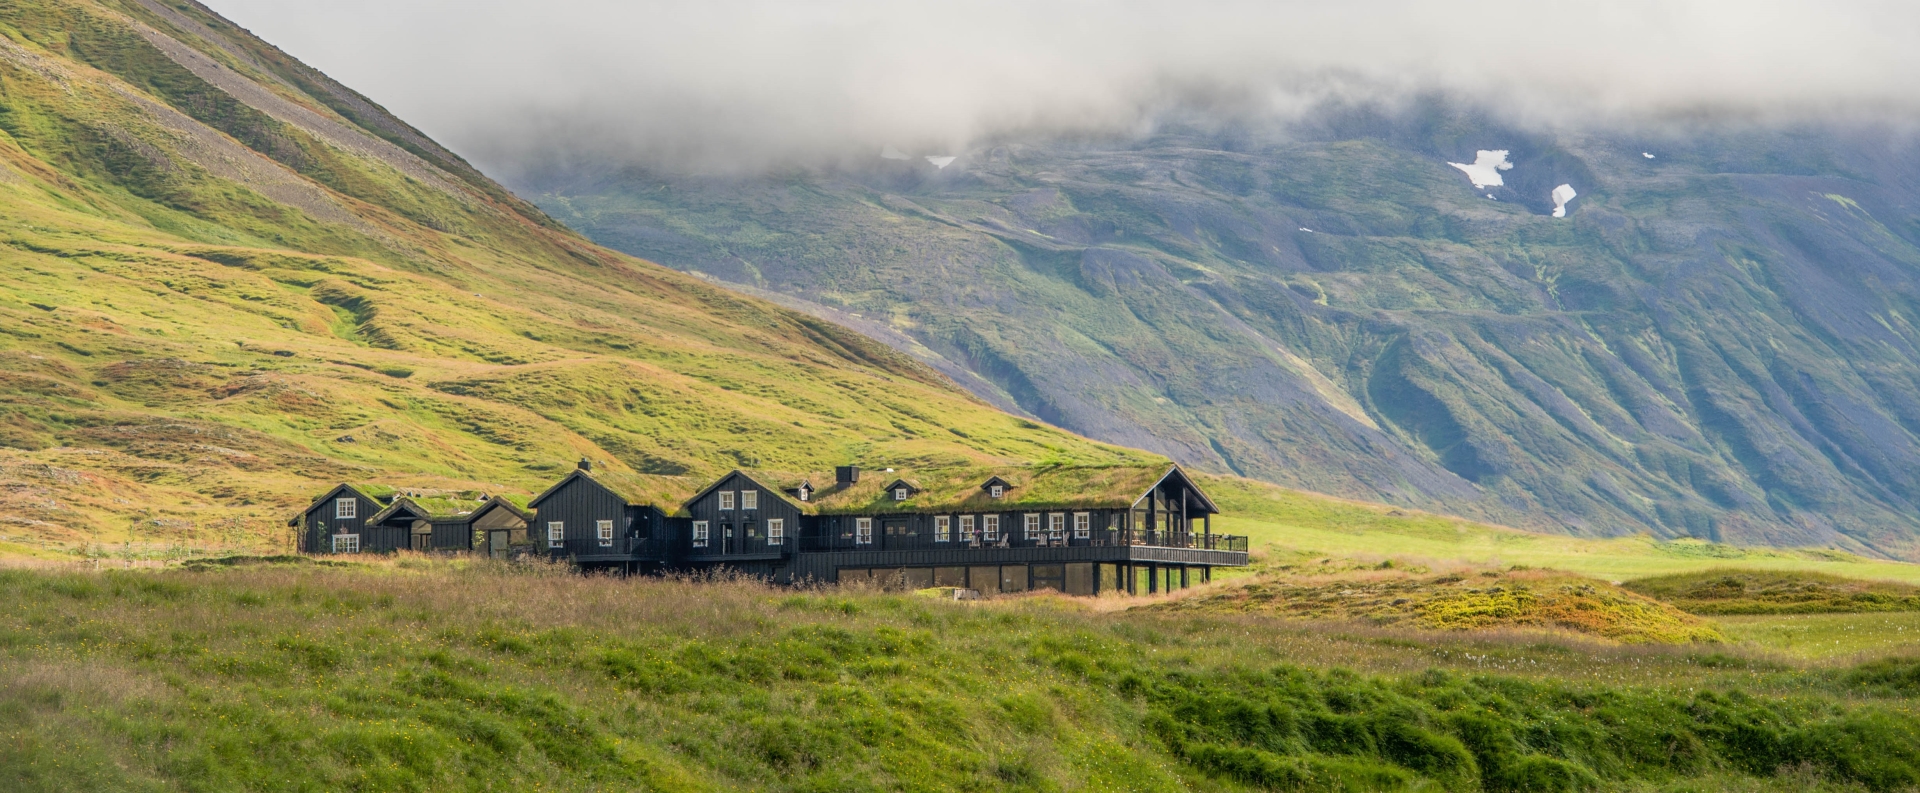 Deplar Farm - Ultimate Iceland